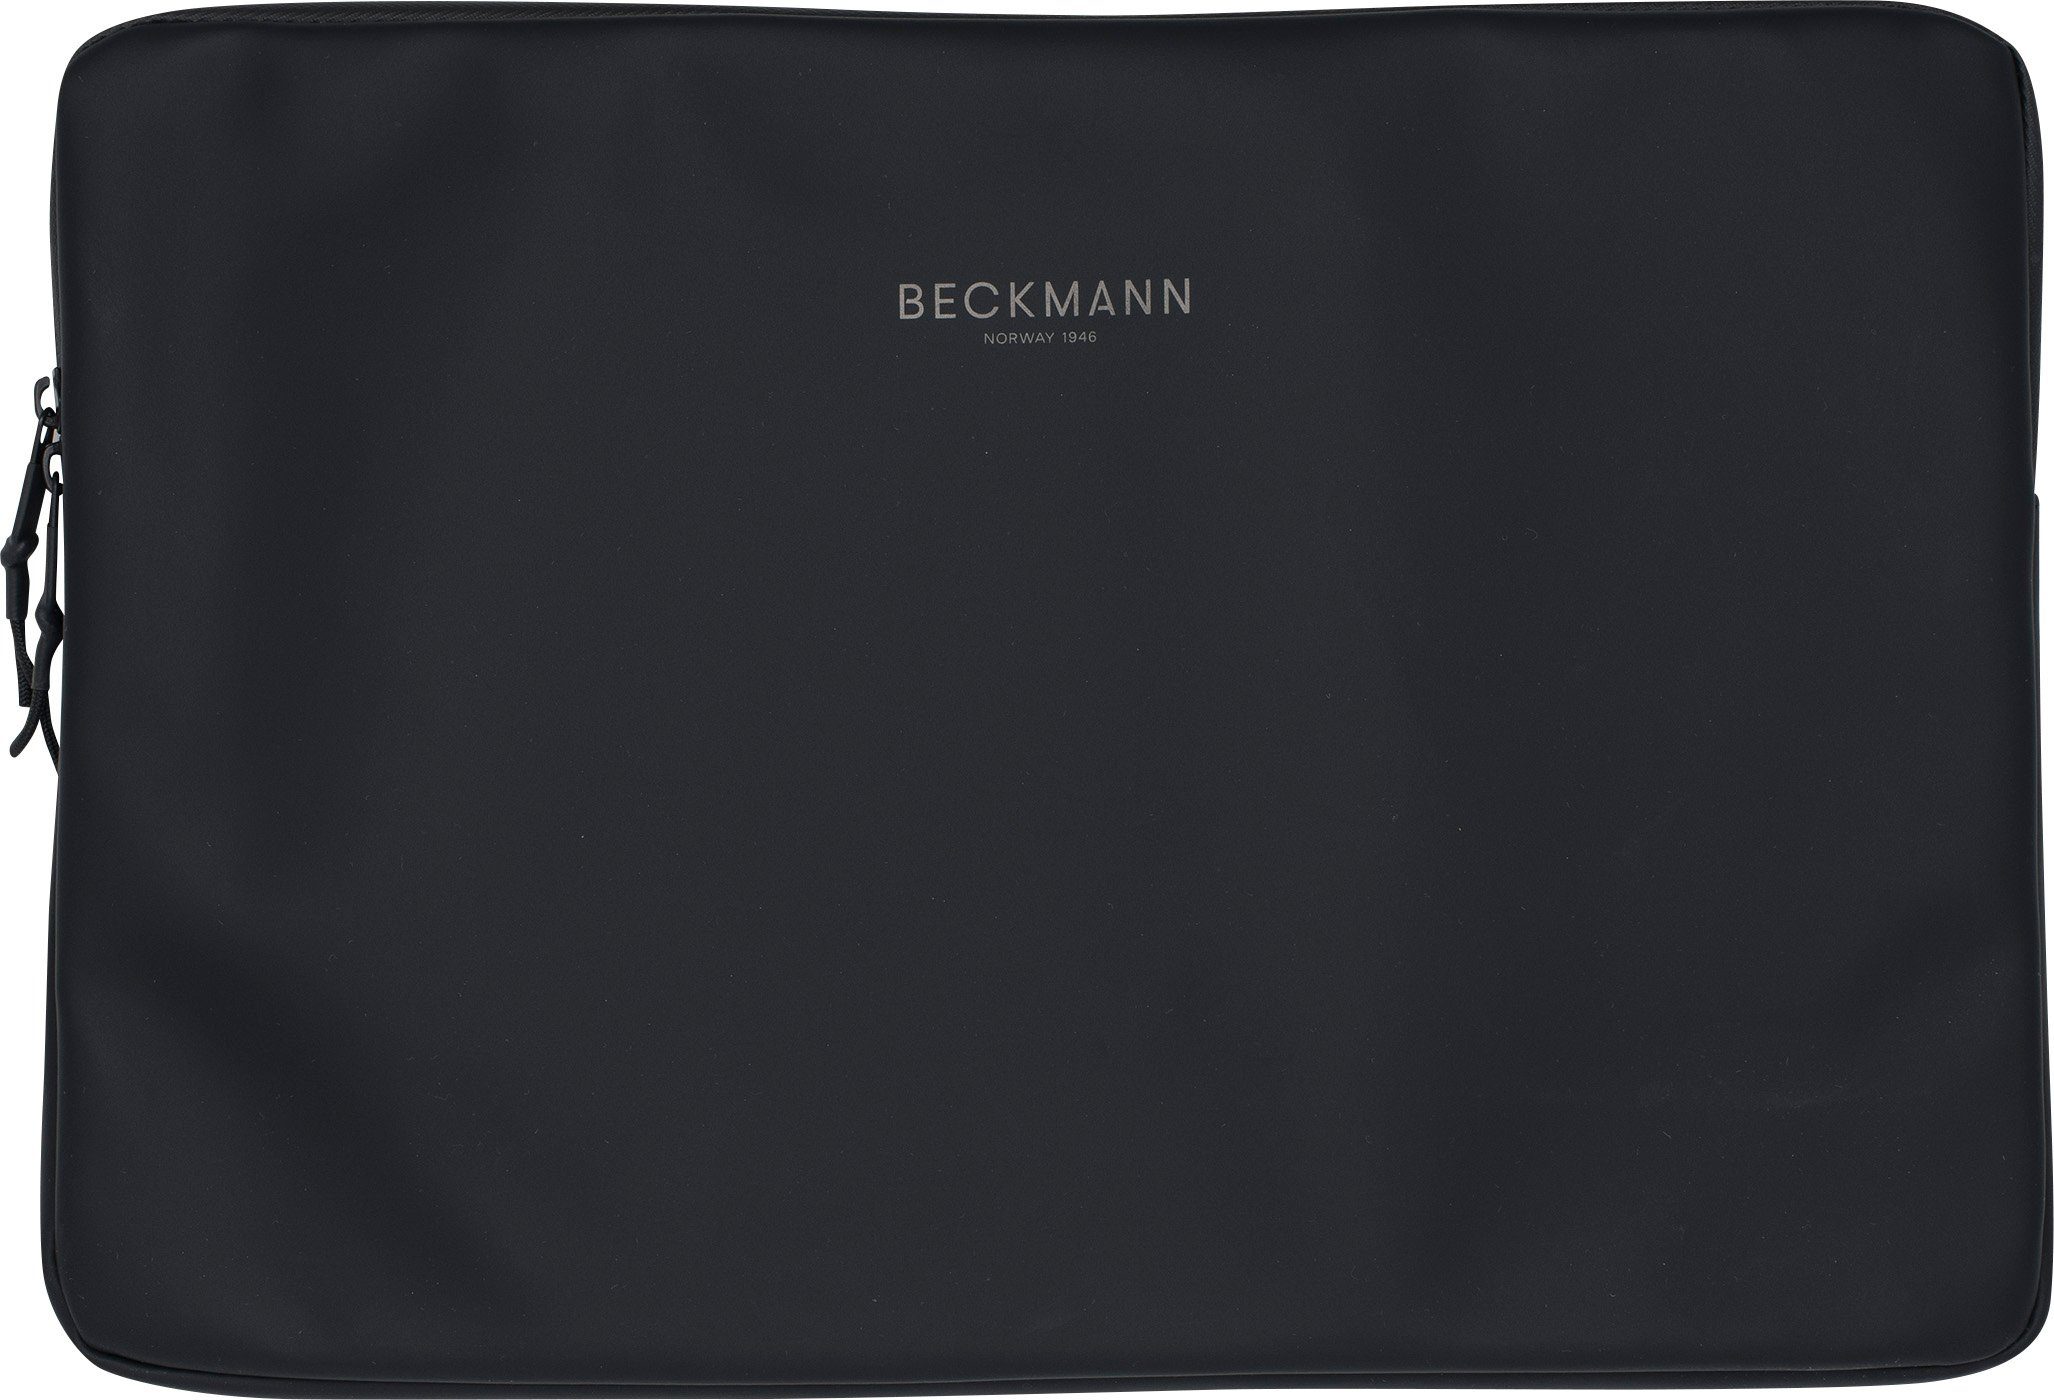 Beckmann Laptoptasche Laptophülle Street Sleeve L Black 15 Zoll (1 Stück), Laptoptasche, Tablet-Hülle